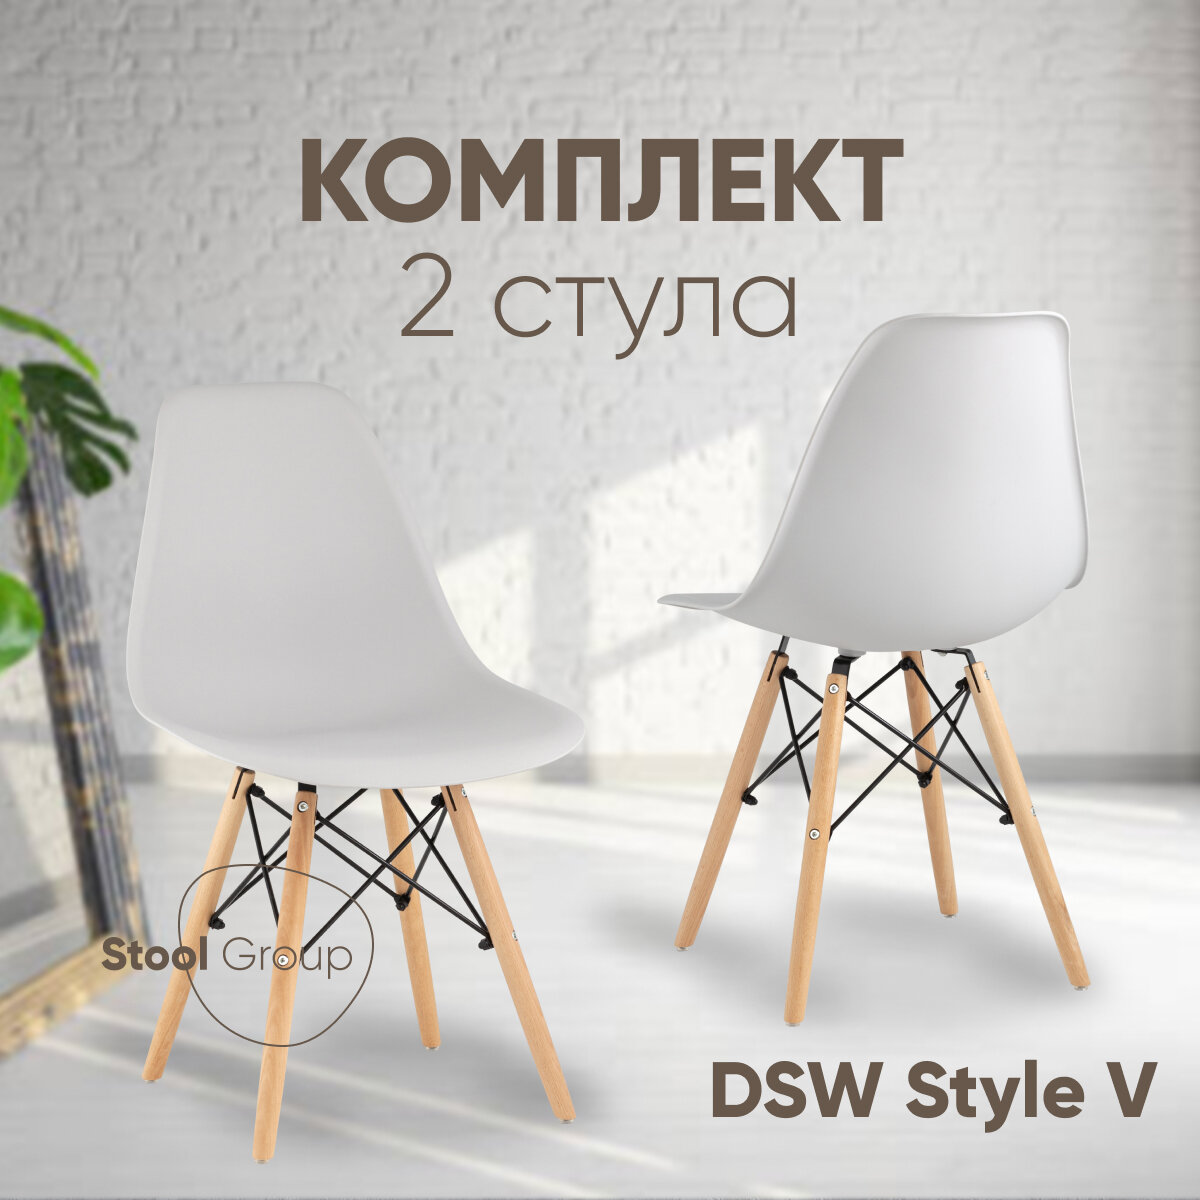 Стул для кухни DSW Style V, светло-серый (комплект 2 стула)